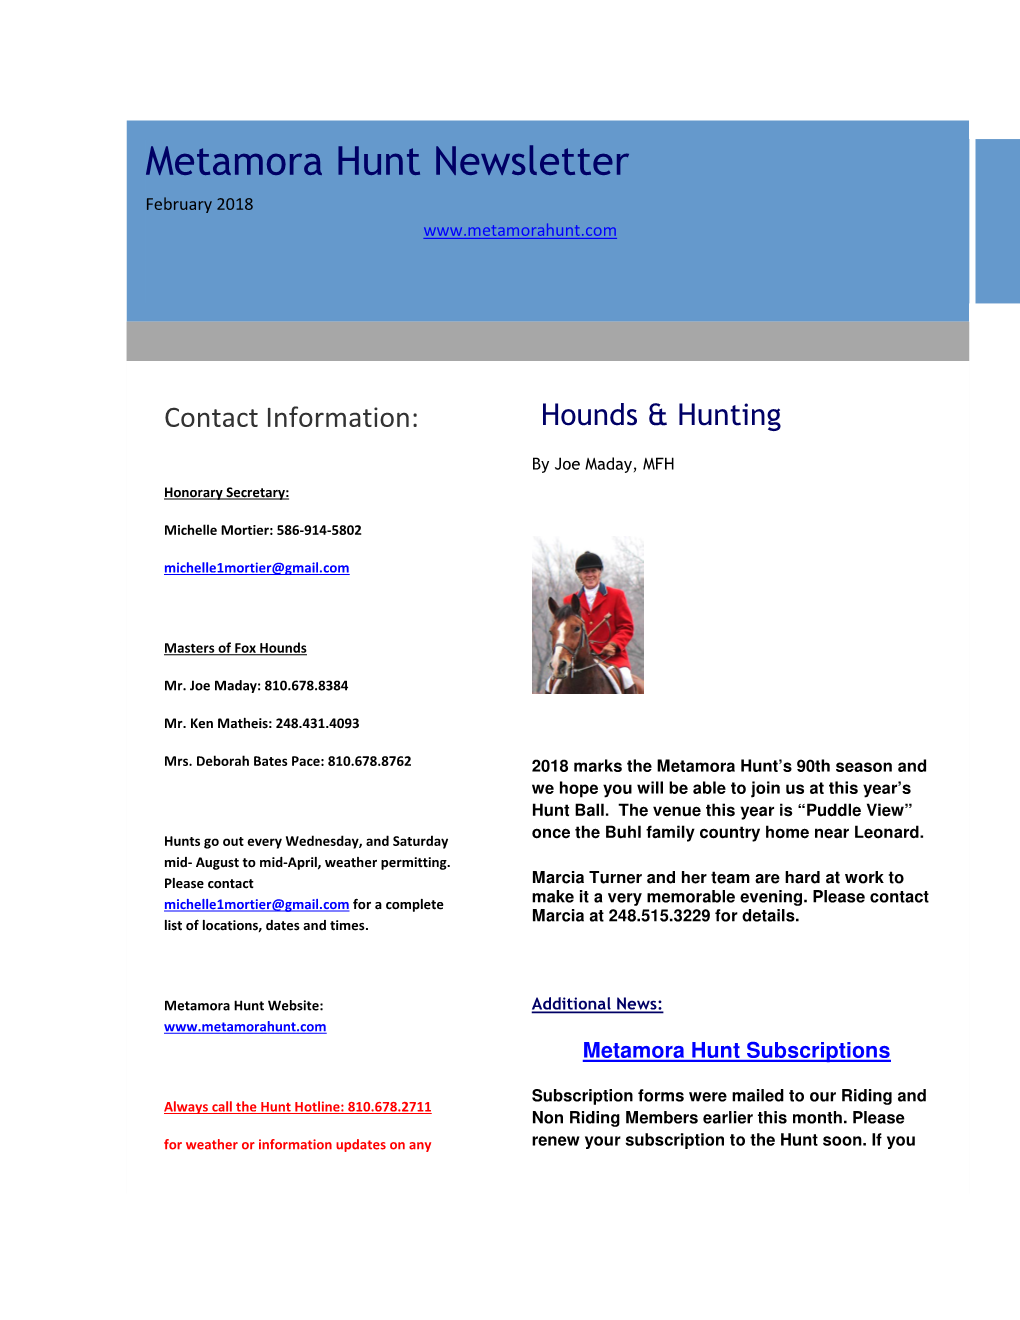 Metamora Hunt Newsletter February 2018